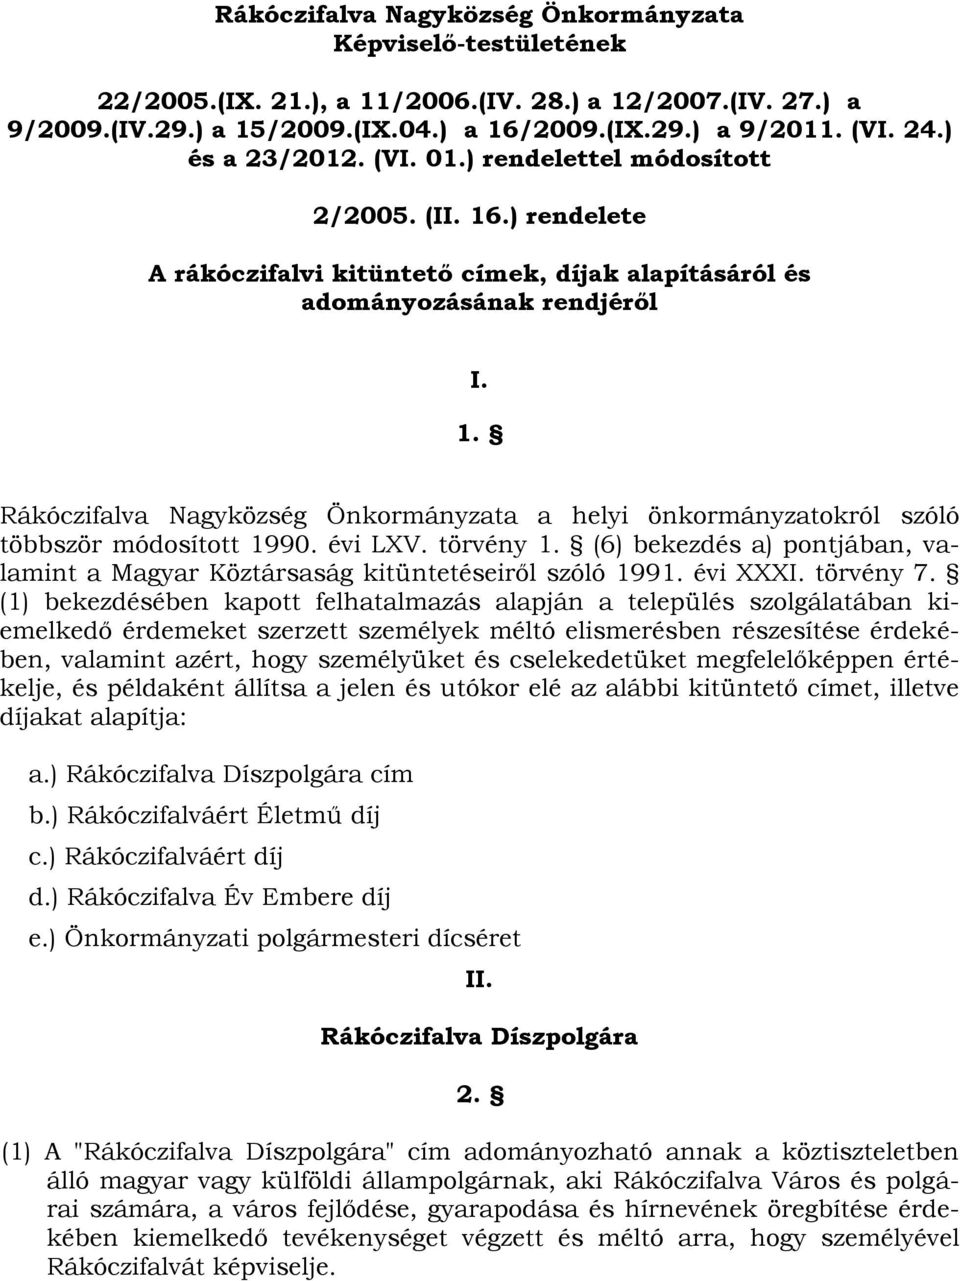 évi LXV. törvény 1. (6) bekezdés a) pontjában, valamint a Magyar Köztársaság kitüntetéseiről szóló 1991. évi XXXI. törvény 7.